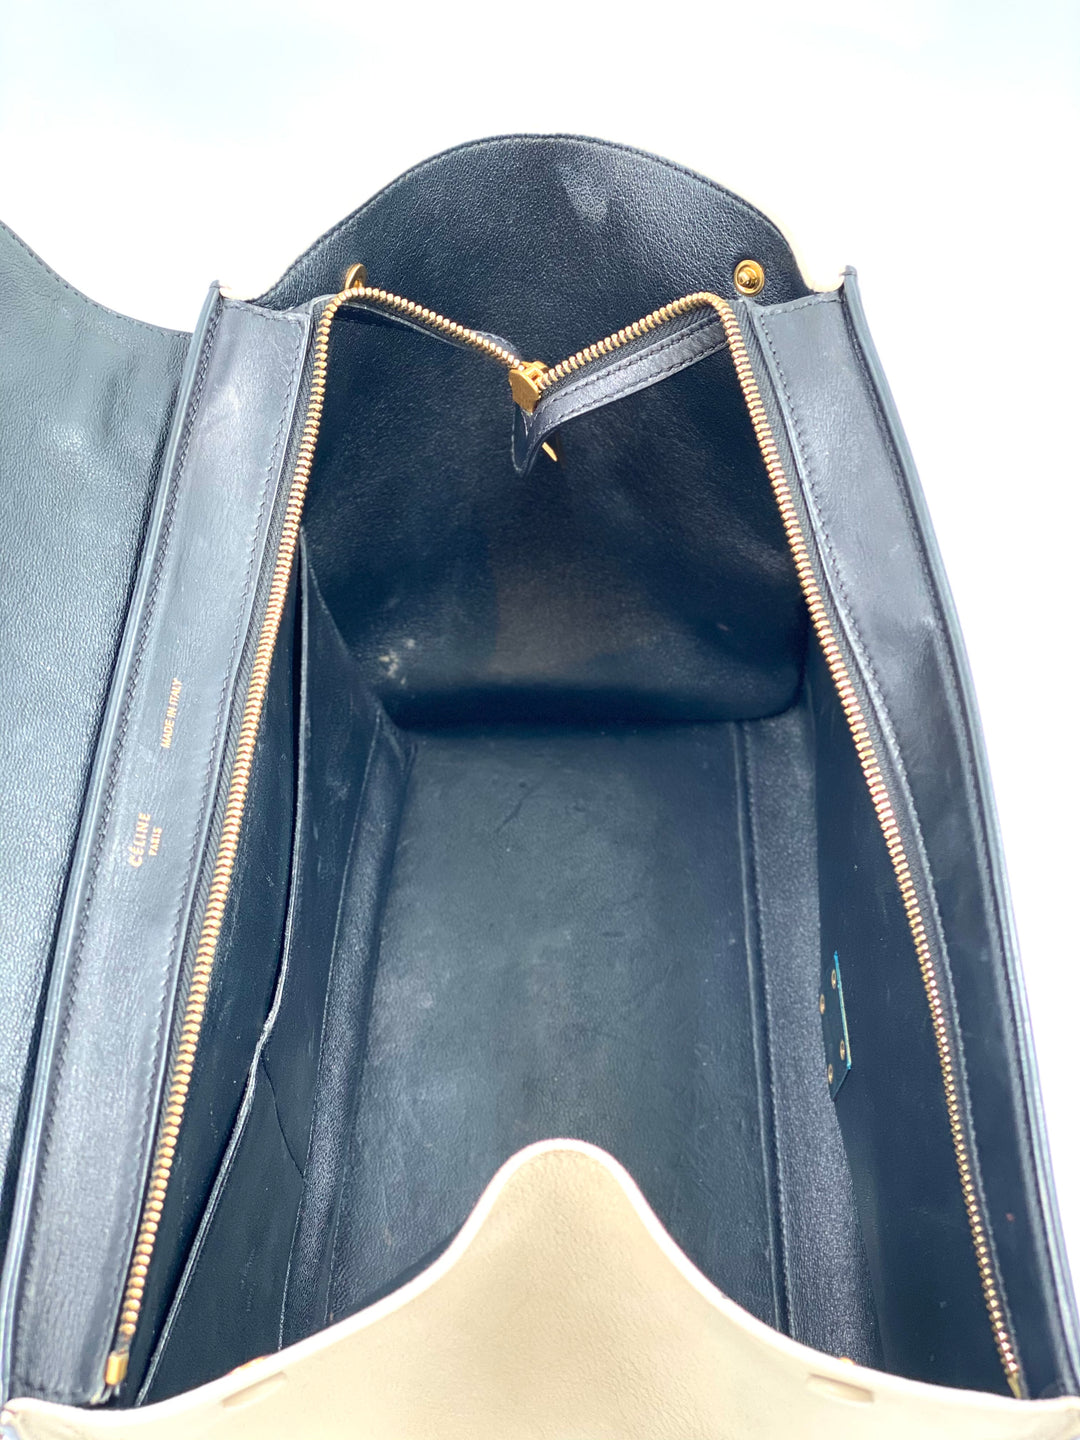 Celine Trapeze medium model handbag python suede